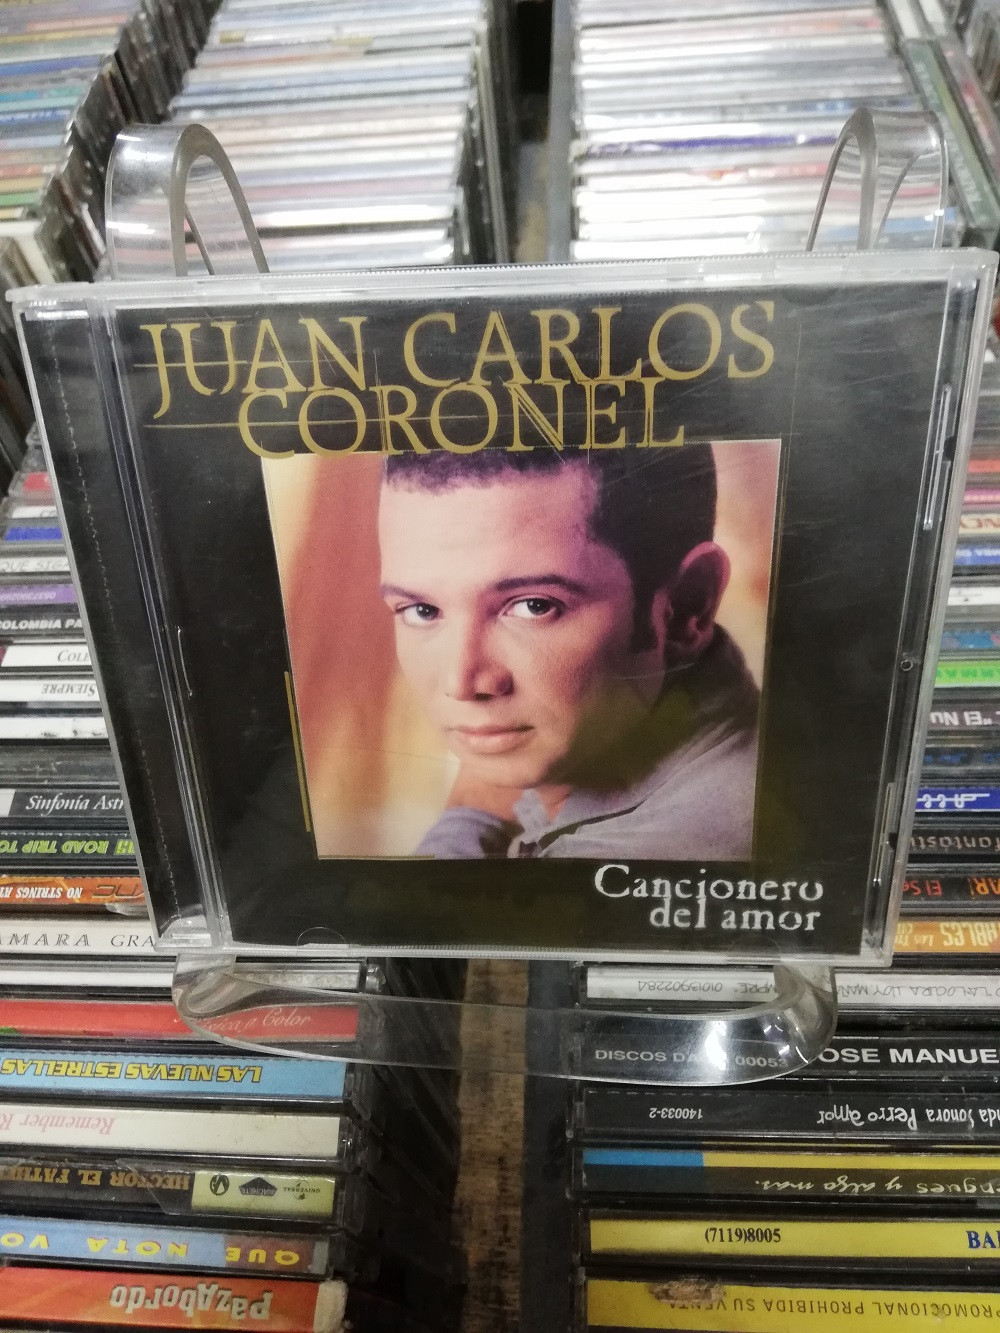 Imagen CD JUAN CARLOS CORONEL - CANCIONERO DE AMOR